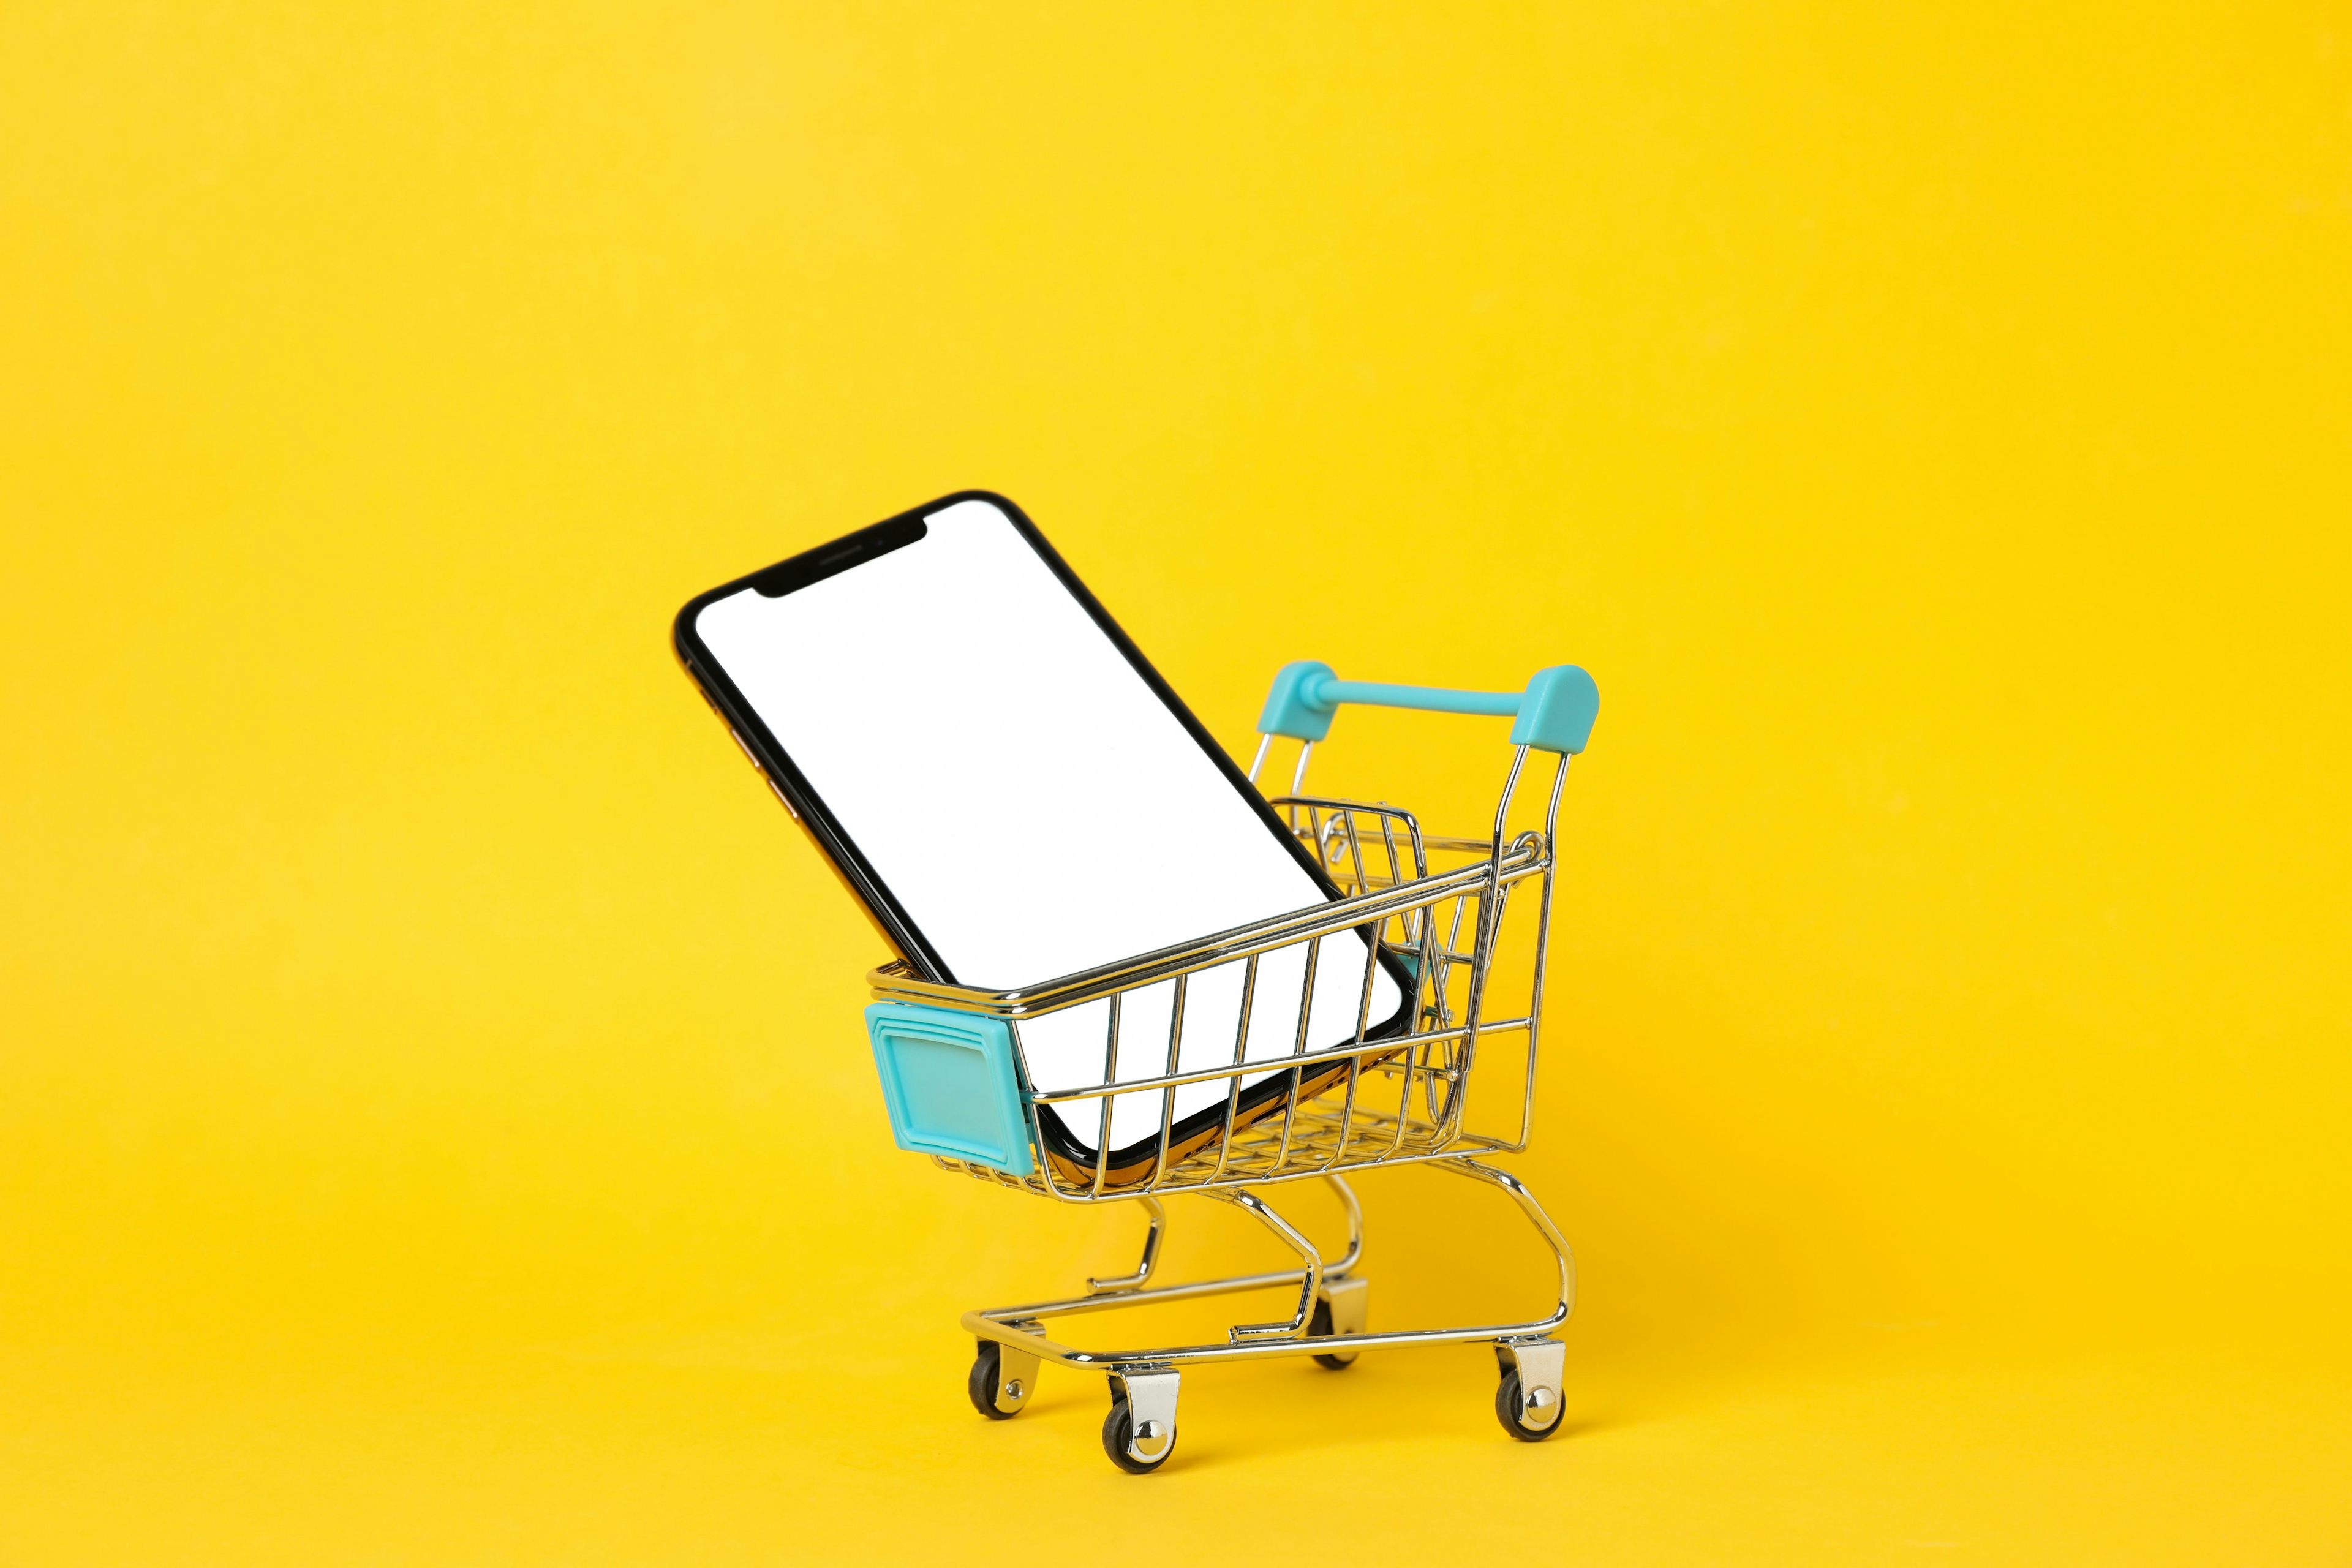 Mein erstes Smartphone – Teil 2: die Qual der Wahl beim Kauf